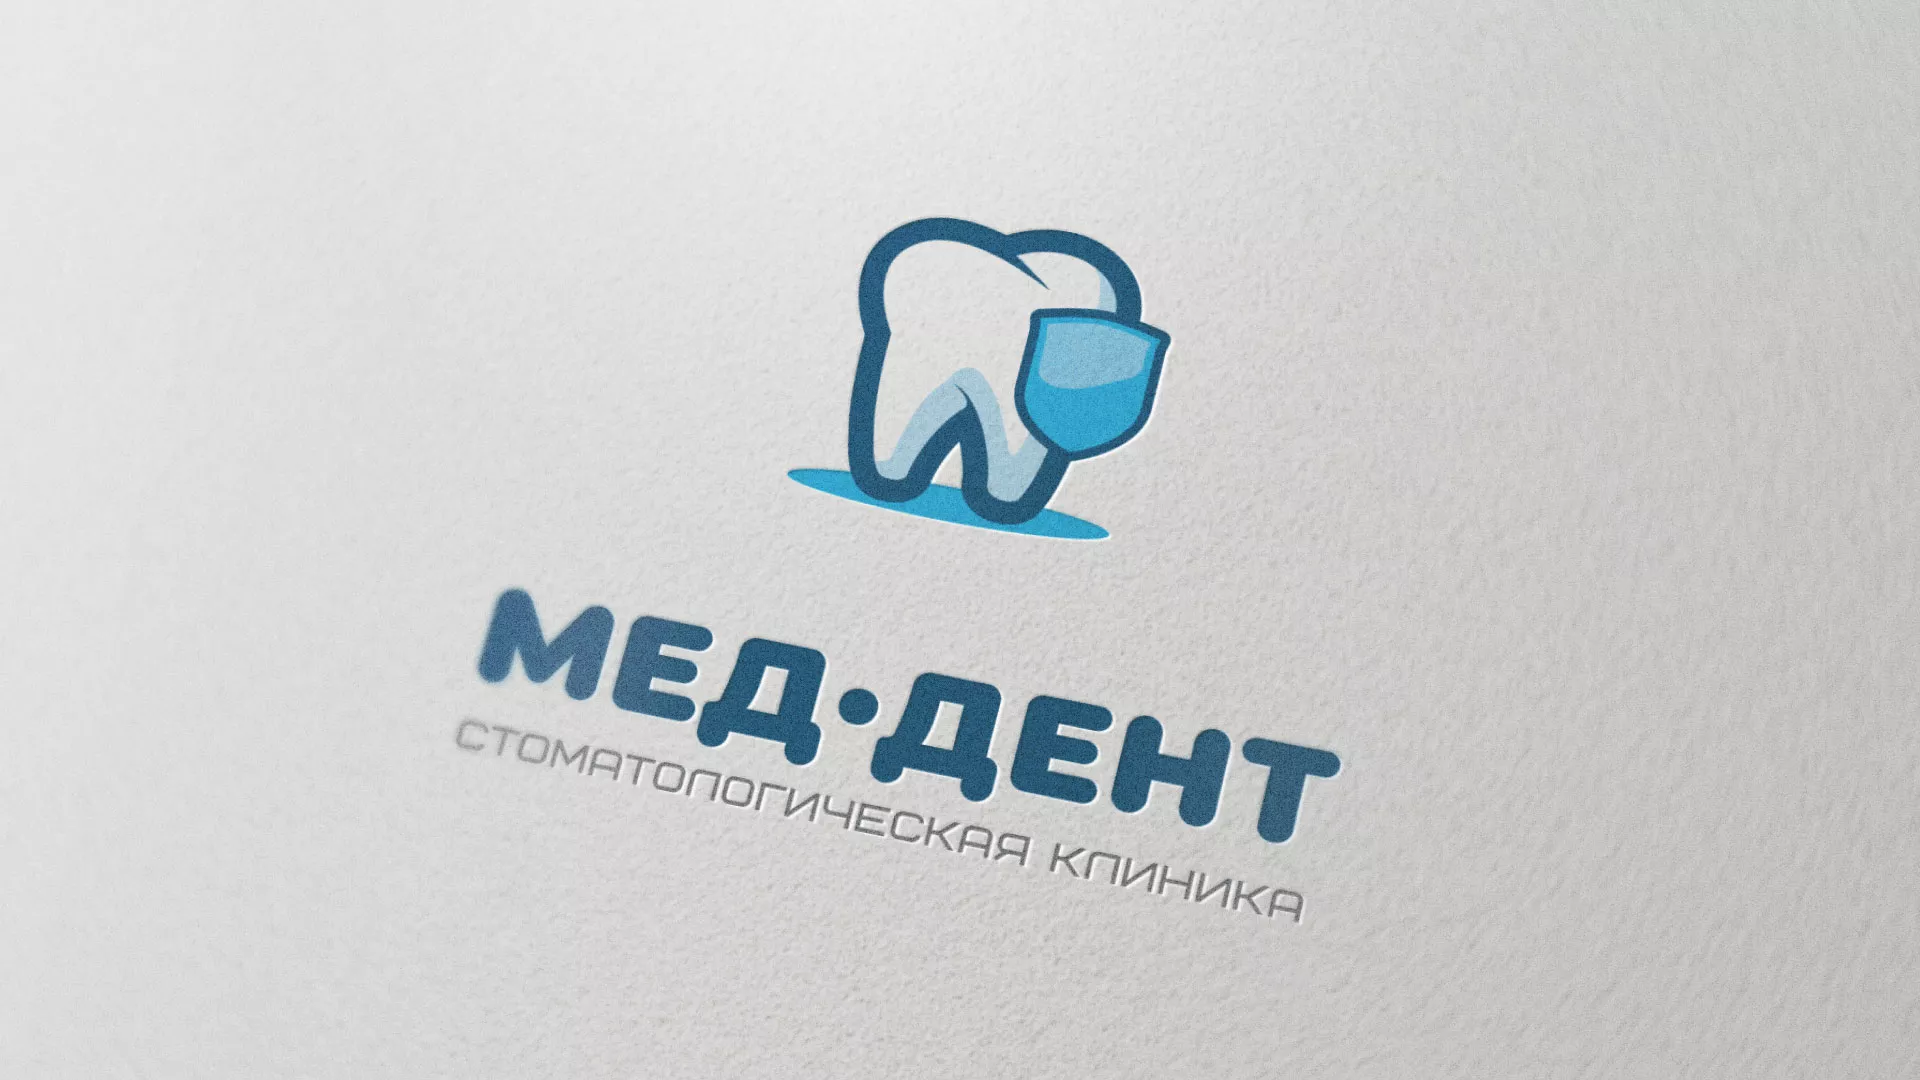 Разработка логотипа стоматологической клиники «МЕД-ДЕНТ» в Химках